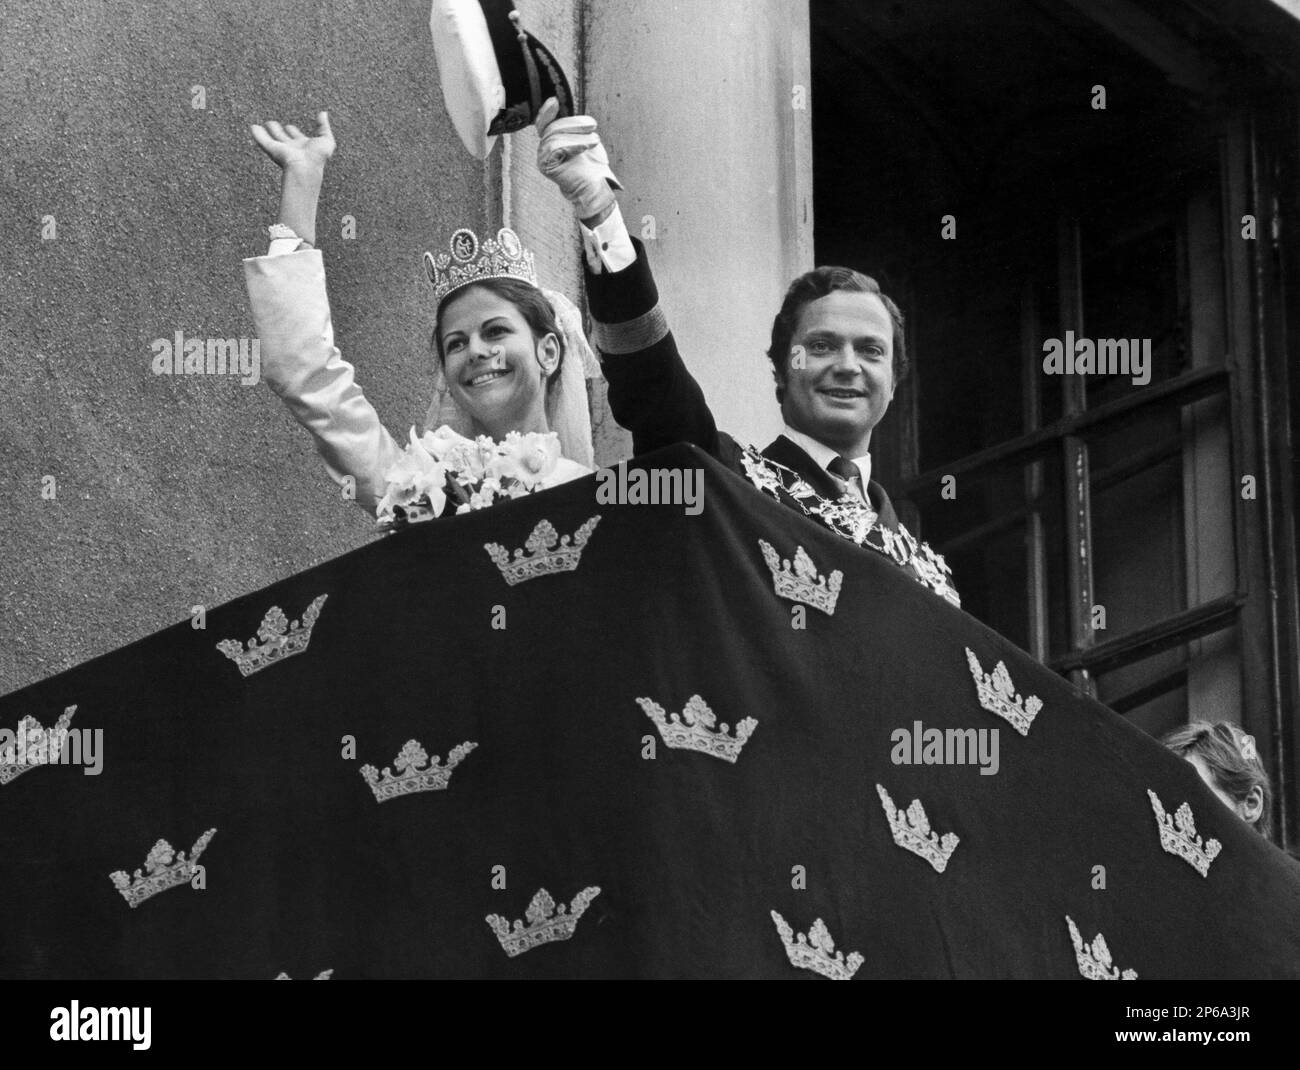 MARIAGE ROYAL SUÈDE 19 juin 1976 Stockholm la mariée et le marié se déferent du balcon du château vers Norrbro Banque D'Images